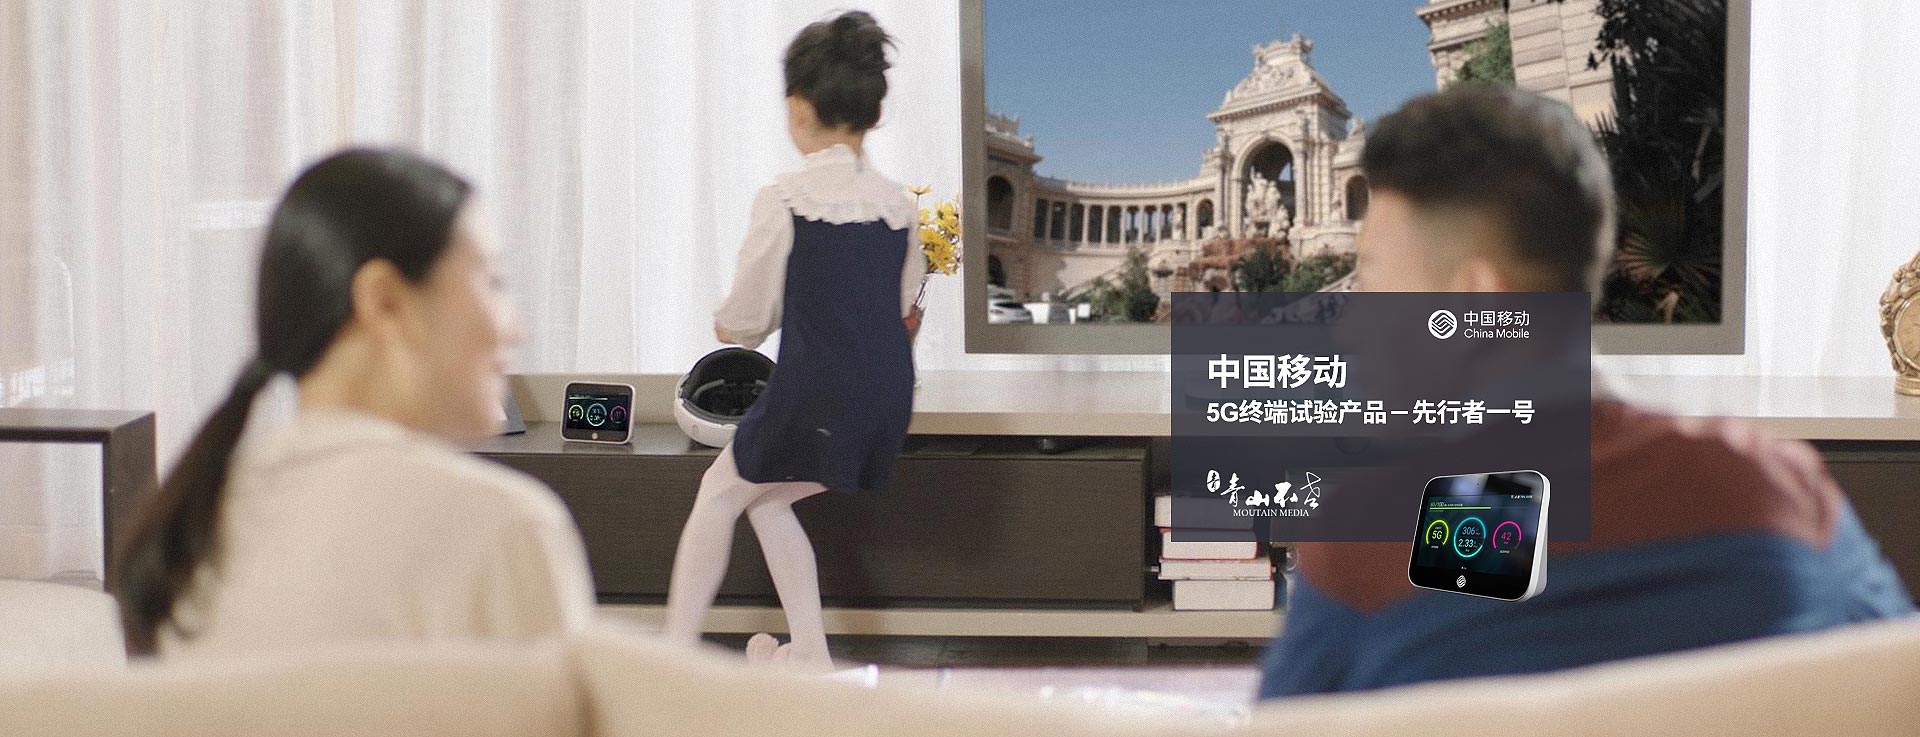 中国移动产品宣传片拍摄